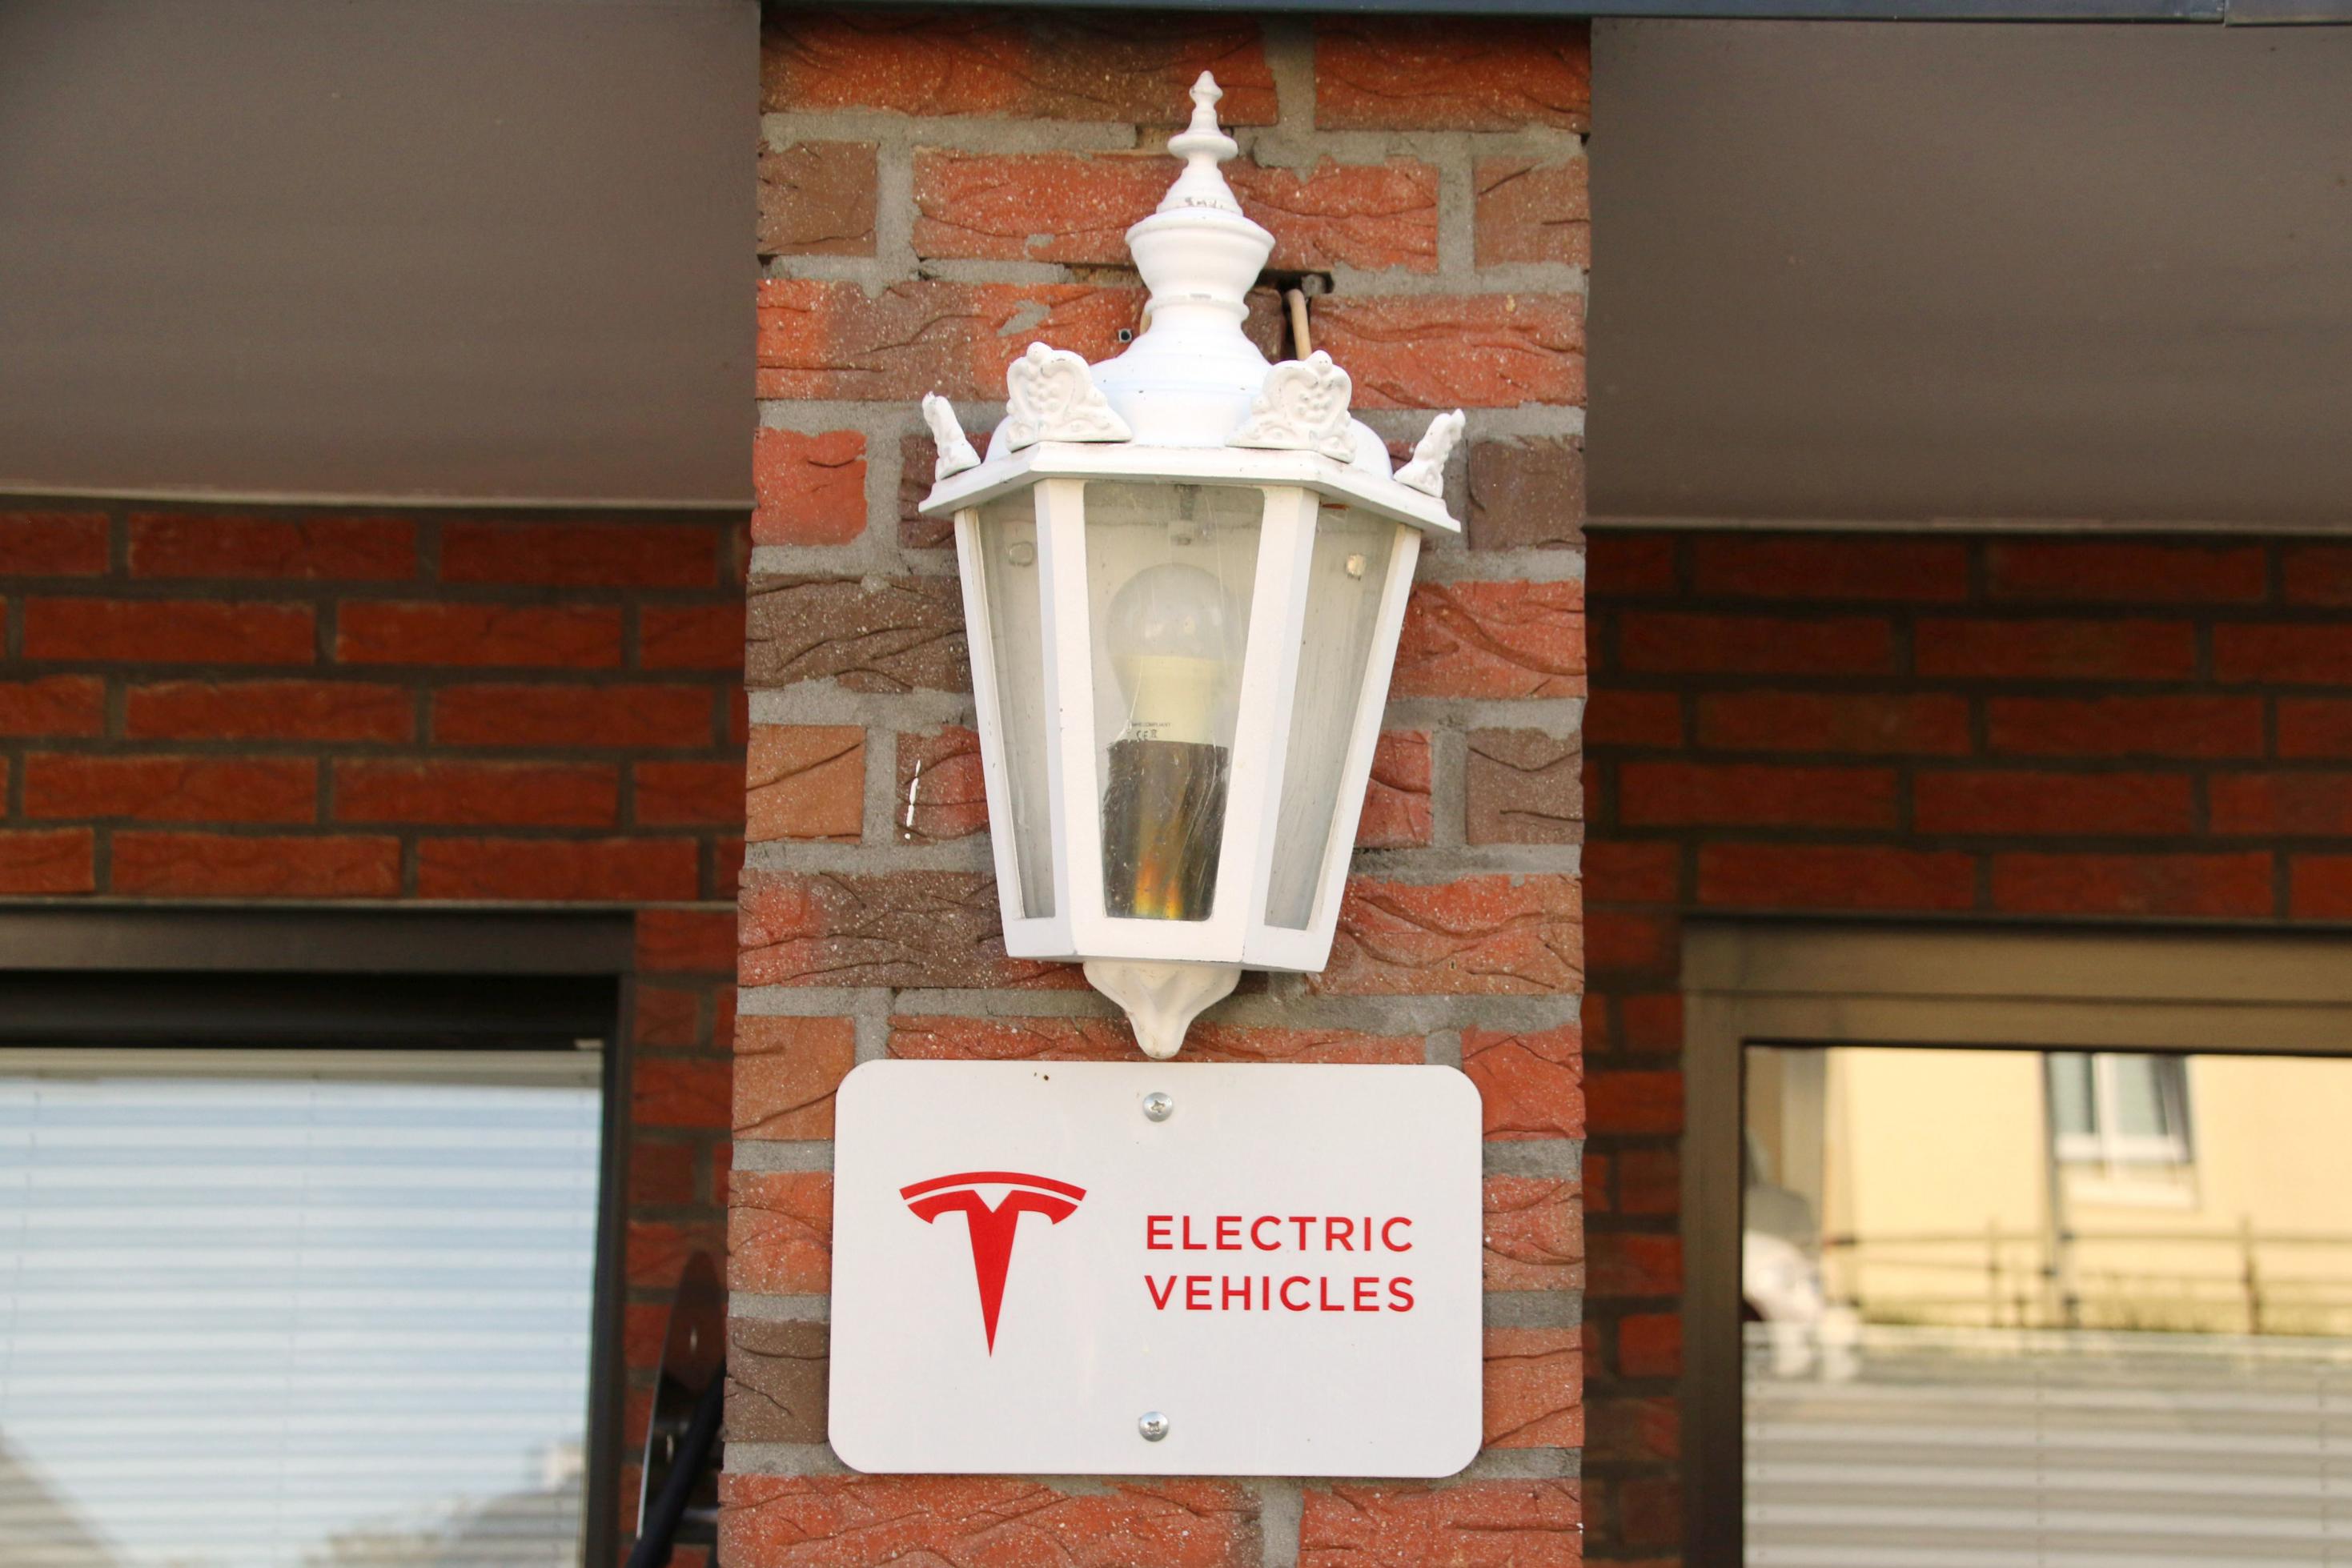 Unter einer Lampe hängt ein Schild, auf dem „Electric Vehicles“ steht